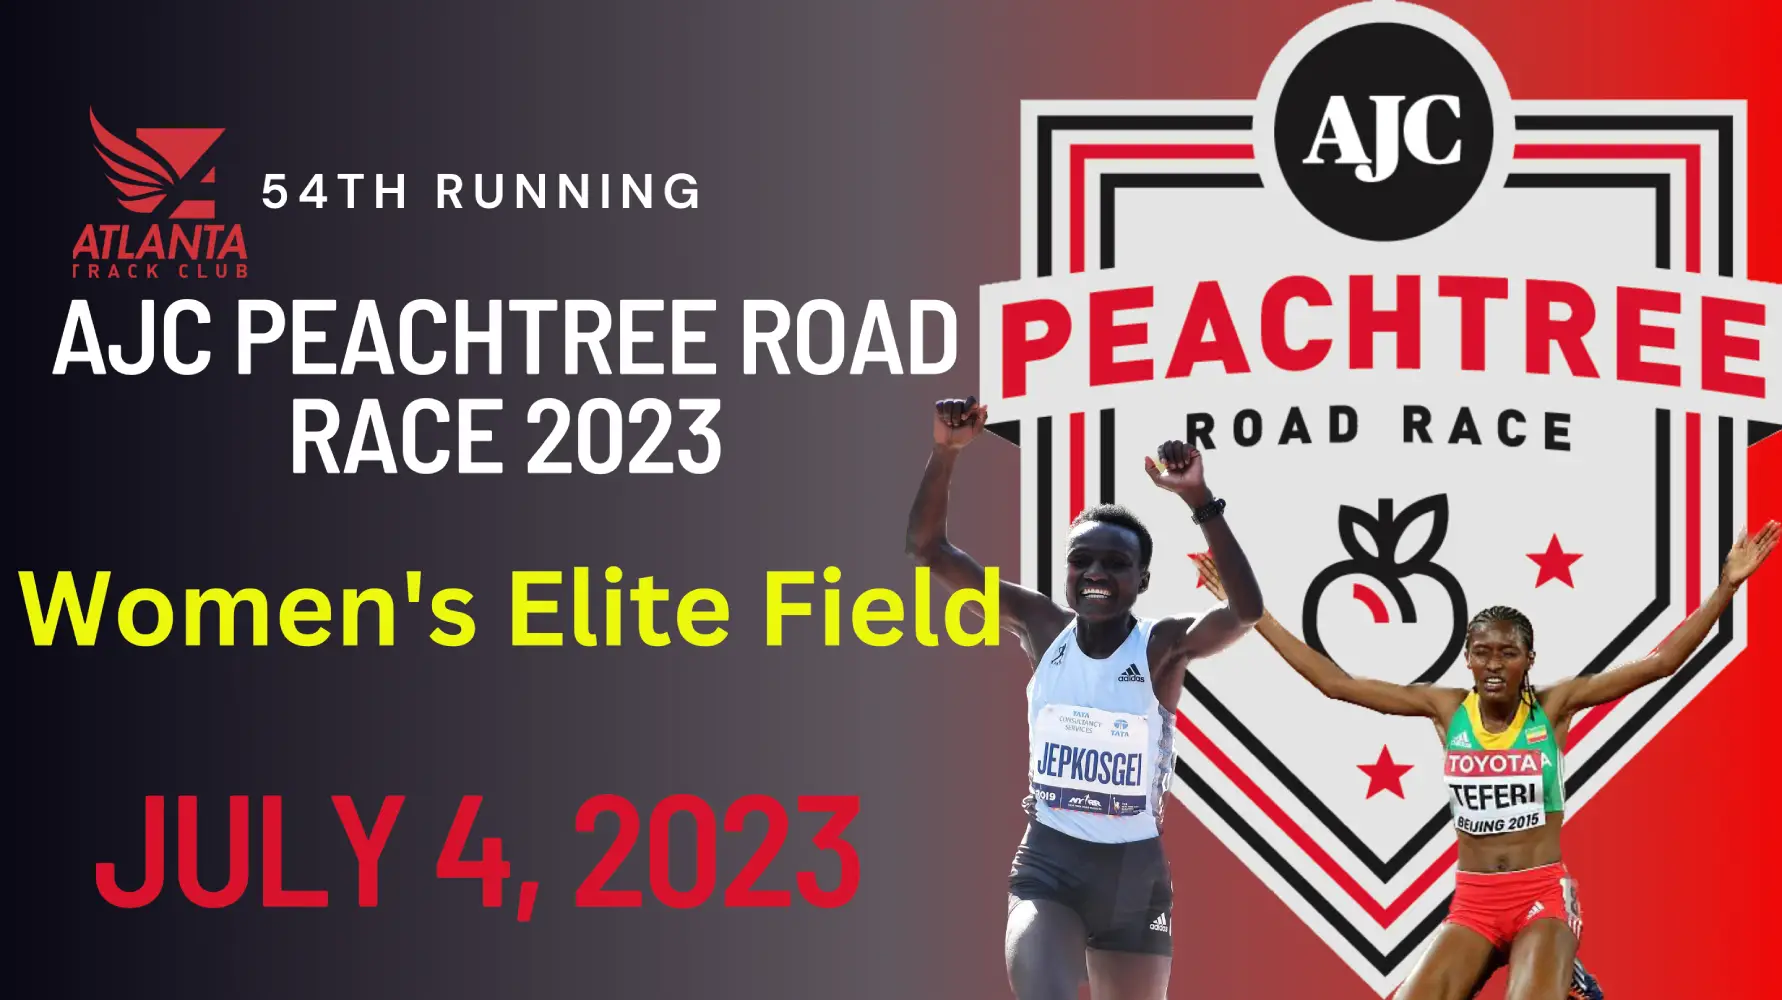 Peachtree Road Race 2023 Women's Elite Field